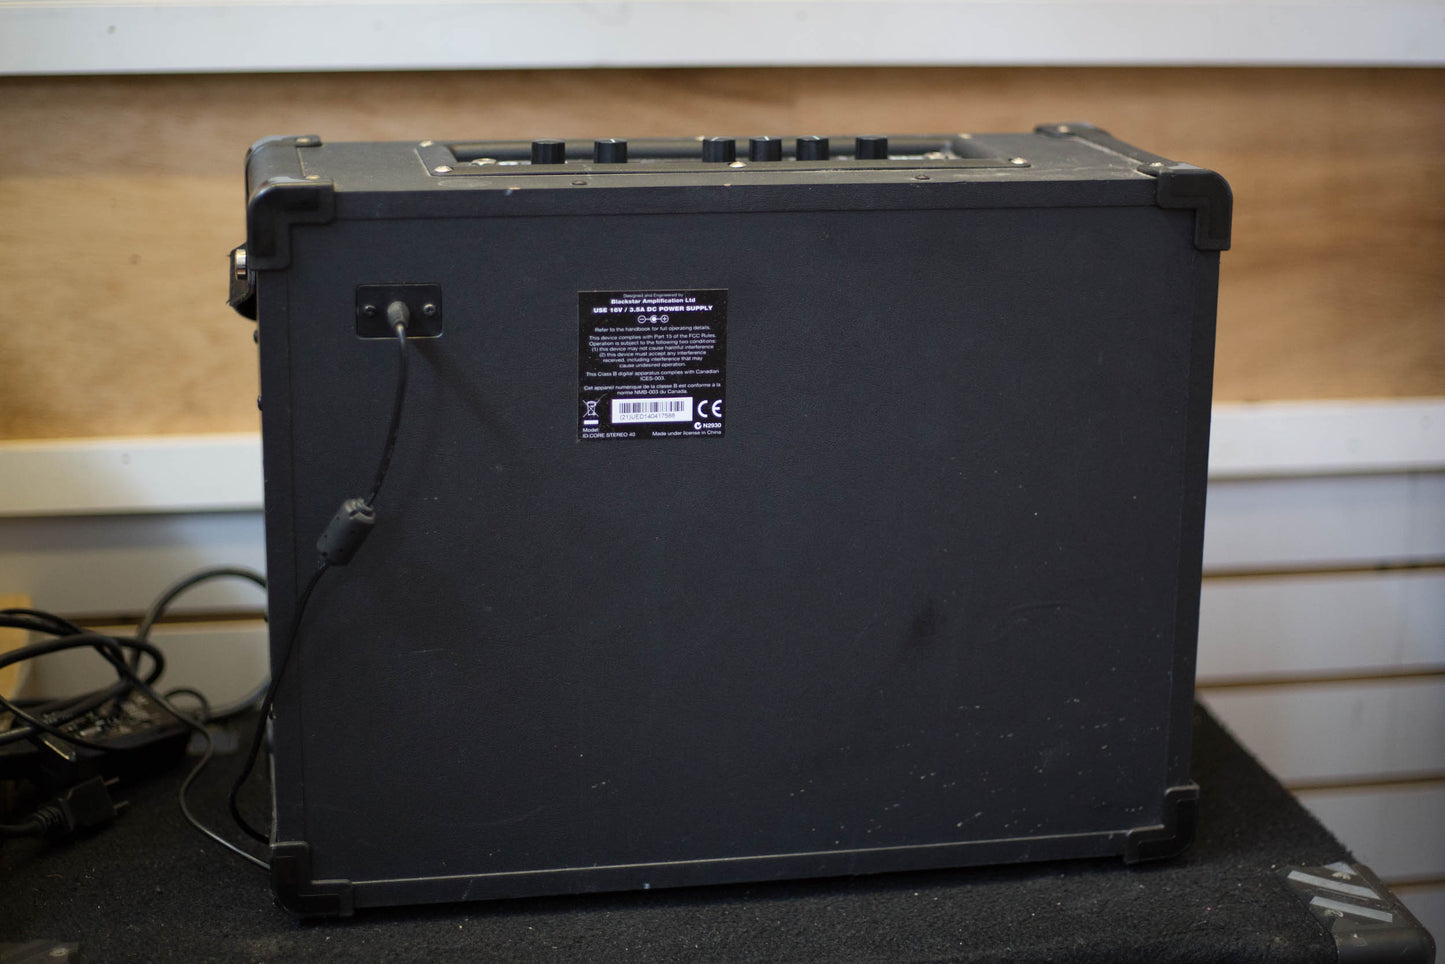 Blackstar ID Core Stereo 40-Watt Combo Amplifier (C1014357)